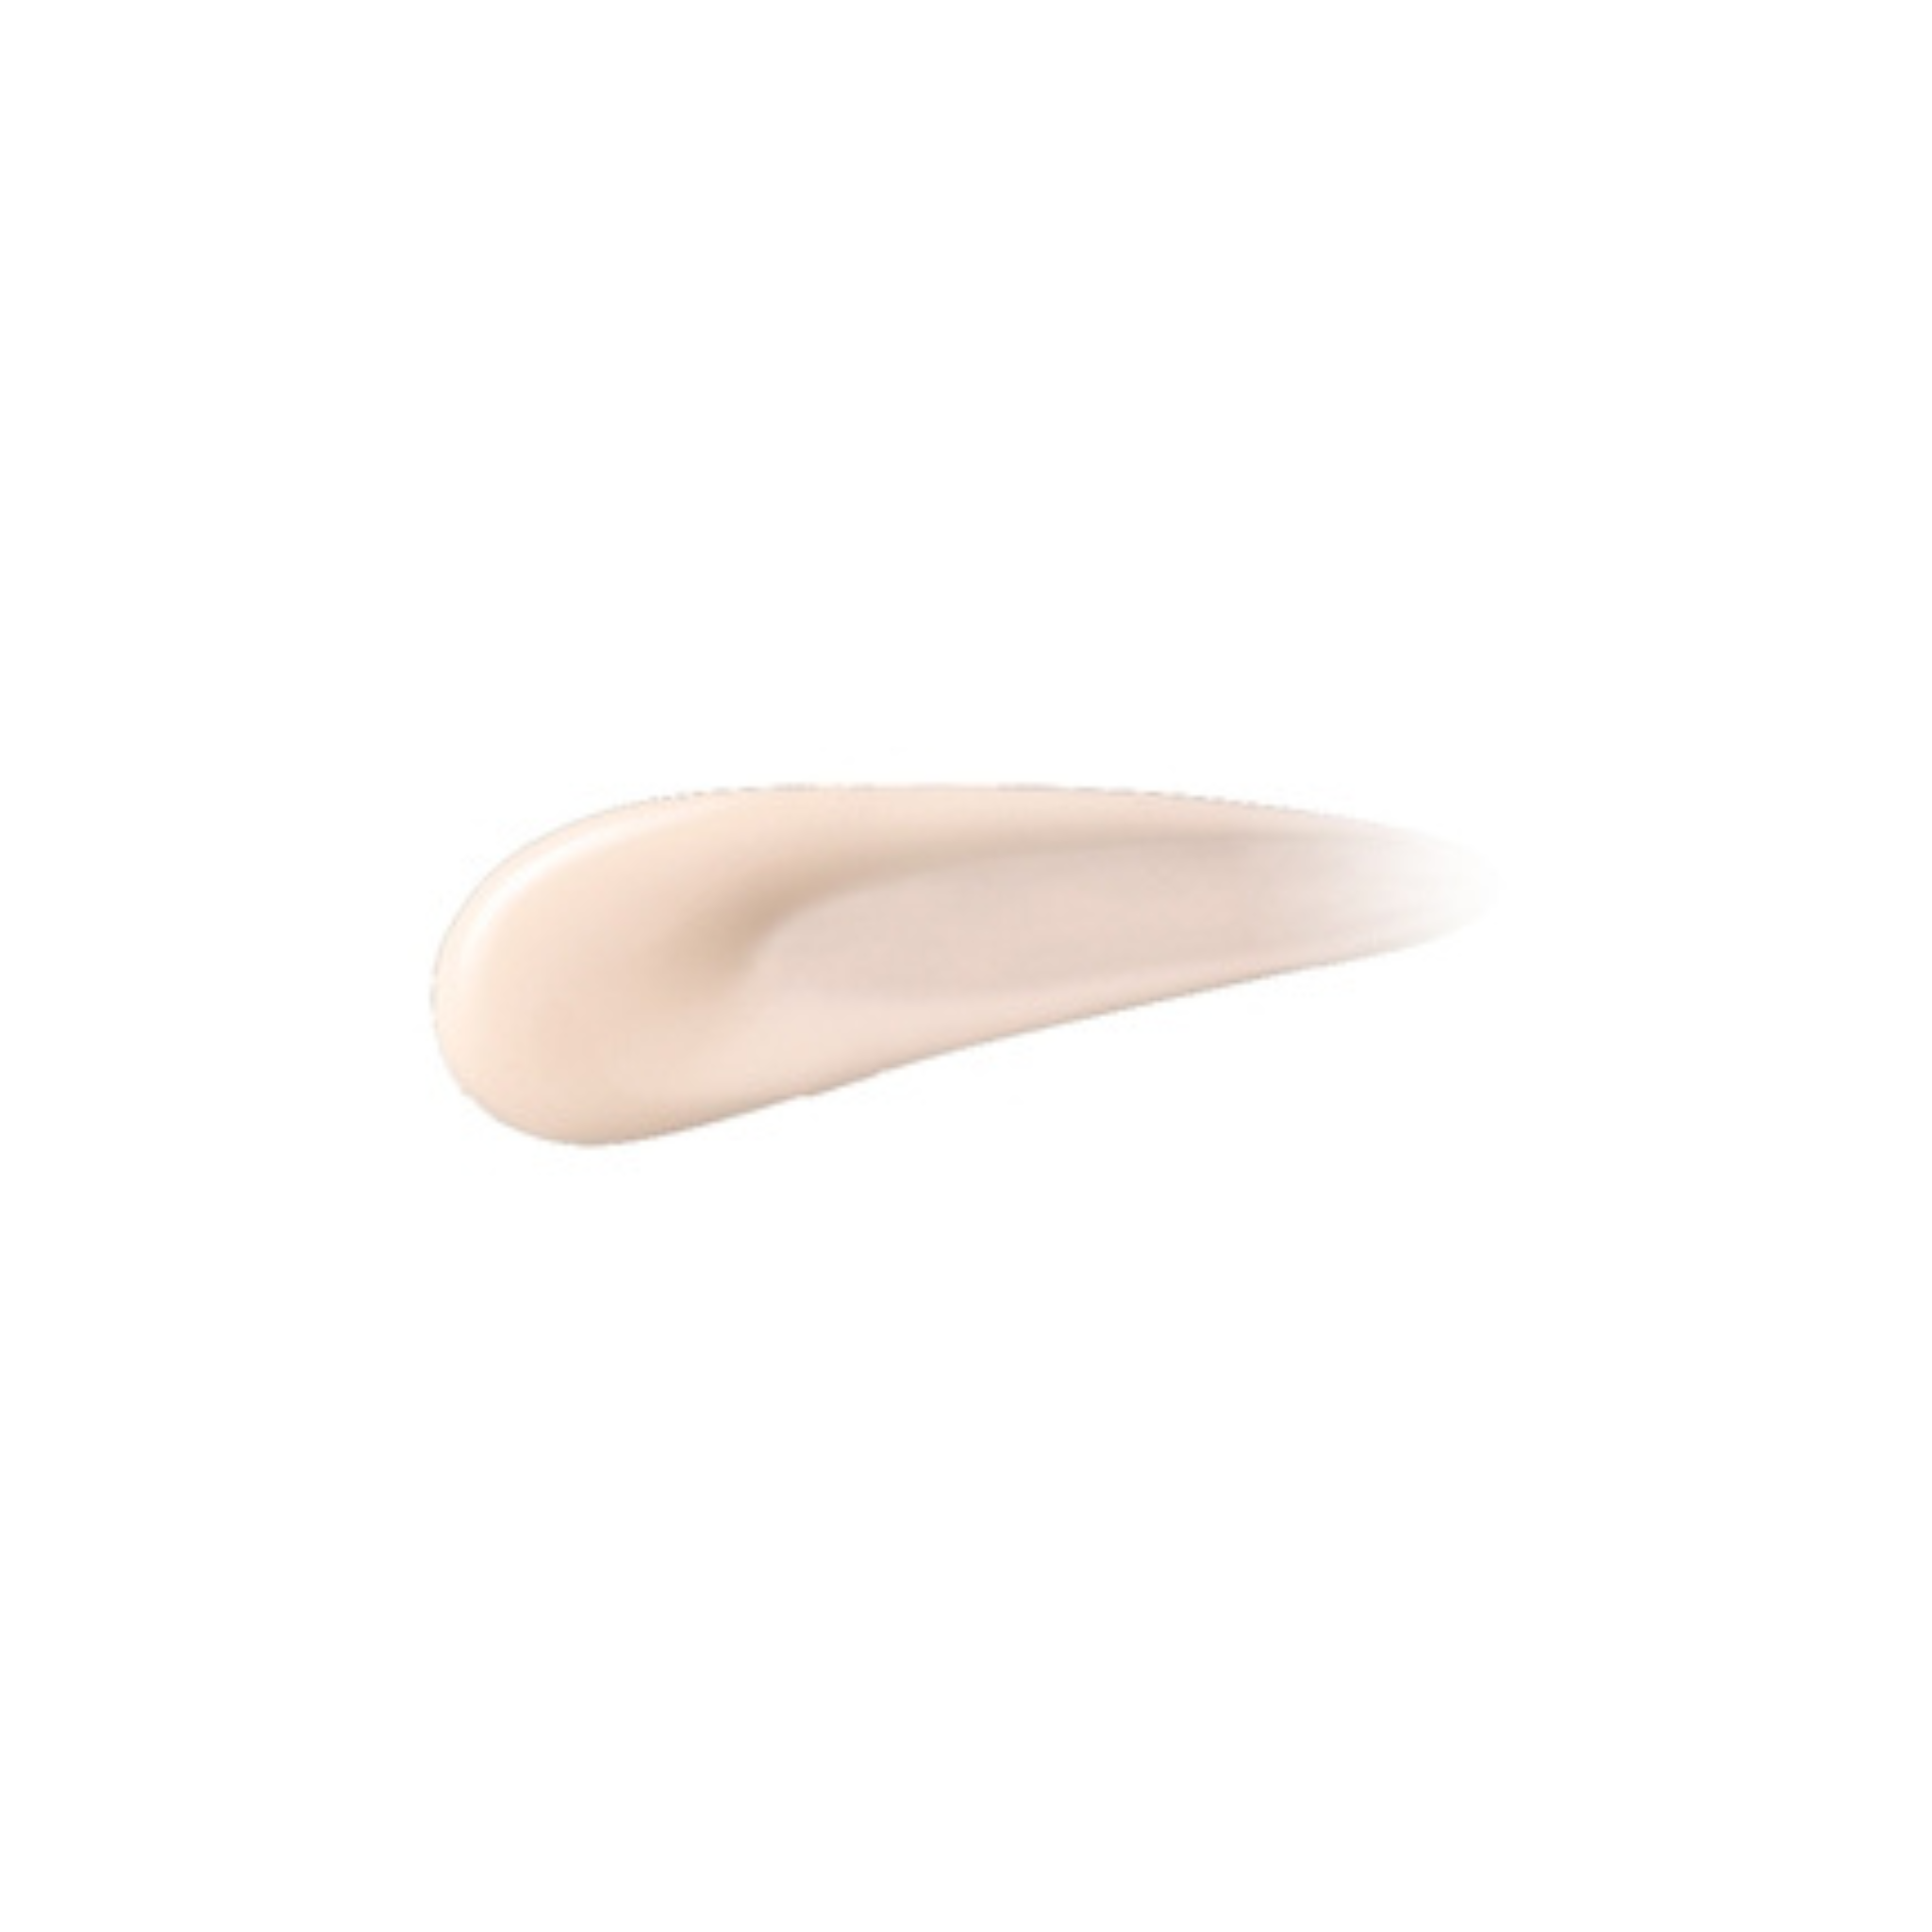 SANA Nameraka Honpo Skin Care UV Make-Up Base SPF 40 PA +++ (50g) texture